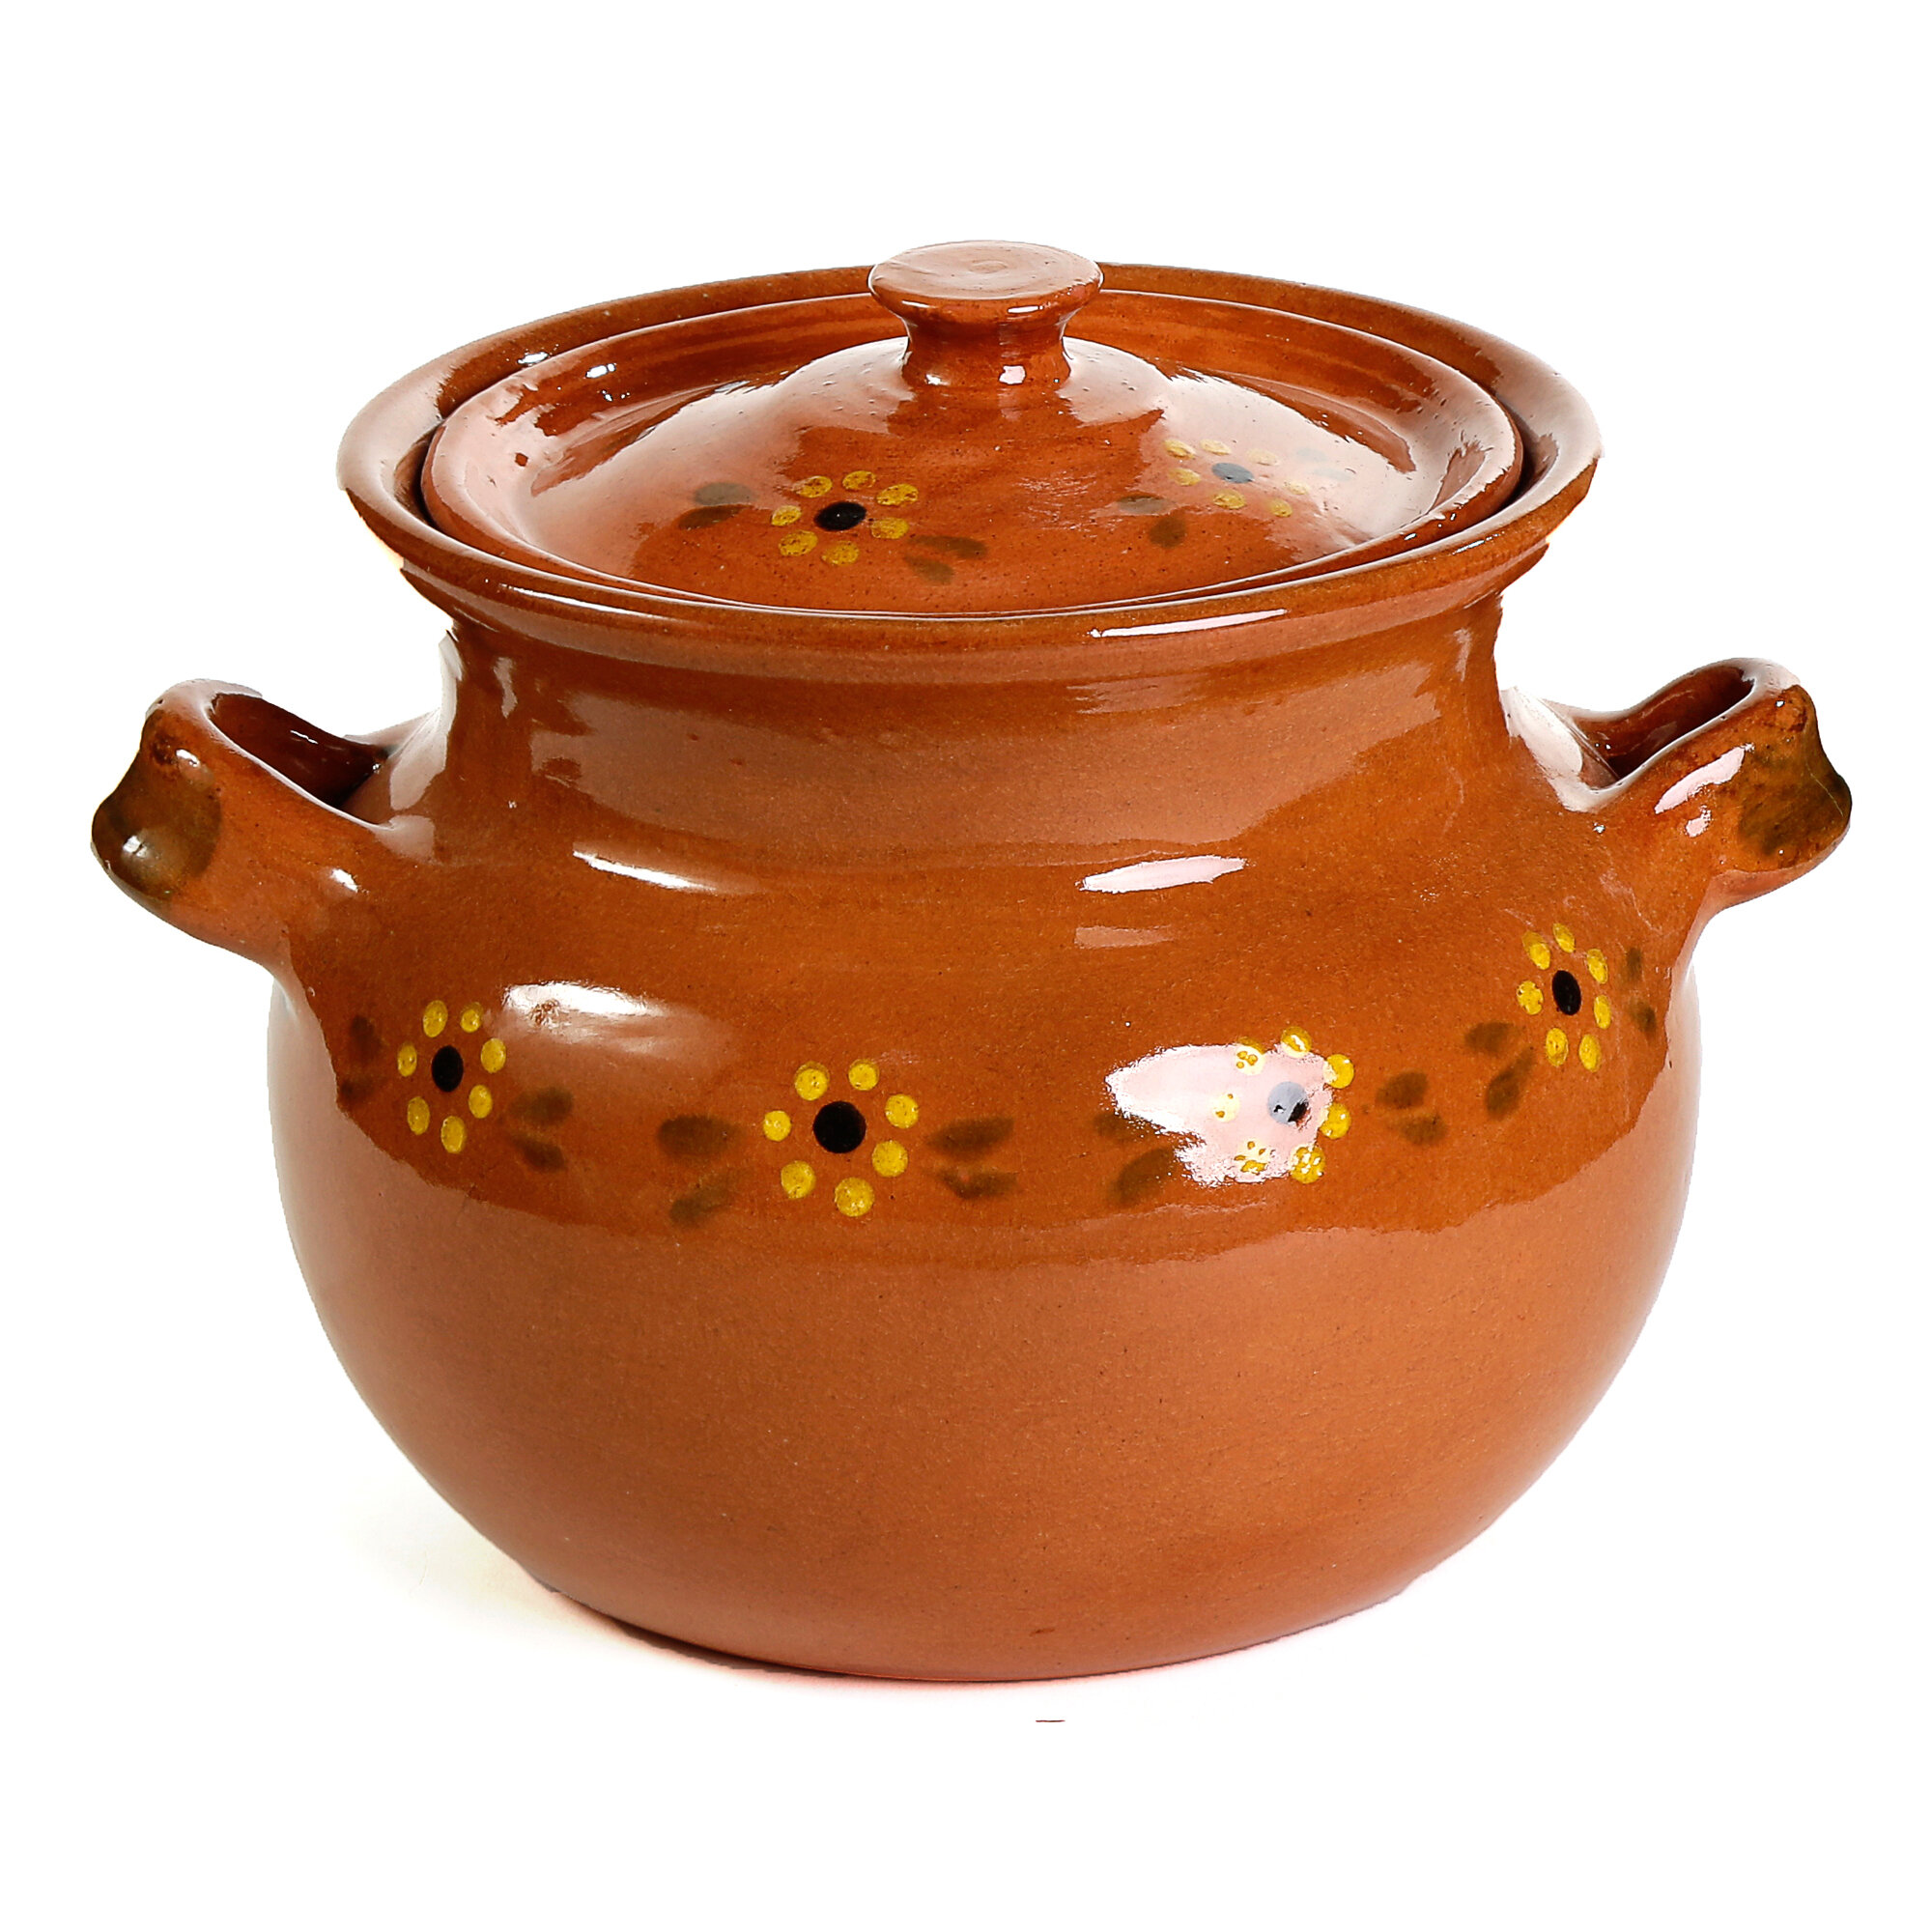 https://assets.wfcdn.com/im/67386792/compr-r85/1336/133630637/ancient-cookware-3-quarts-terracotta-soup-pot.jpg